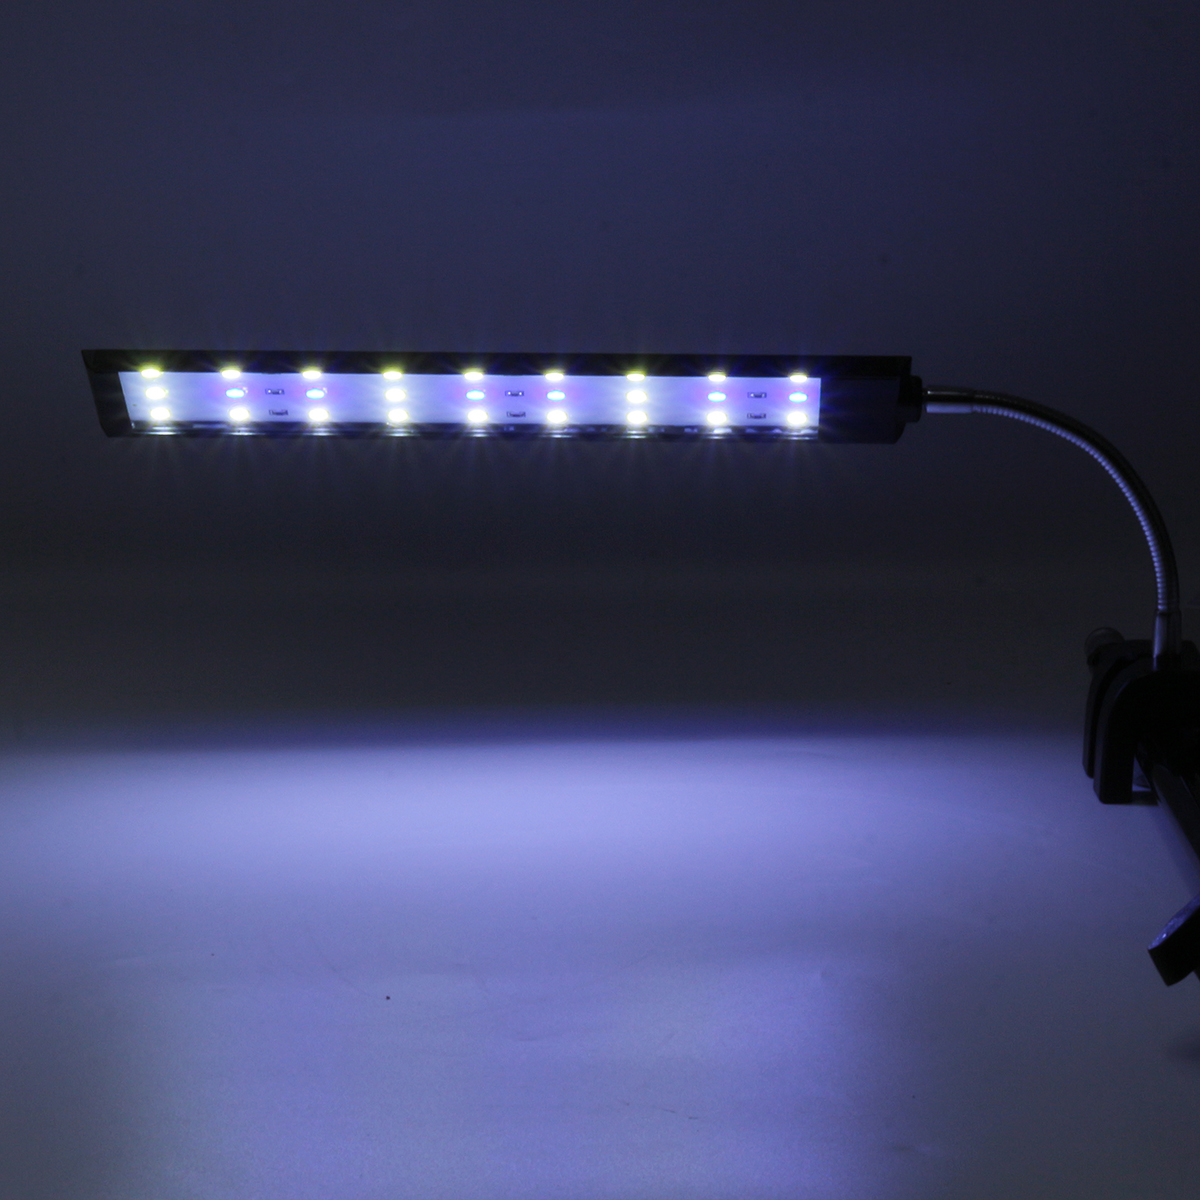 100-240V-10W-Clip-on-LED-Aquarium-Light-Fish-Tank-Decoration-Lighting-Lamp-with-White--Blue-LEDs-Tou-1640561-8